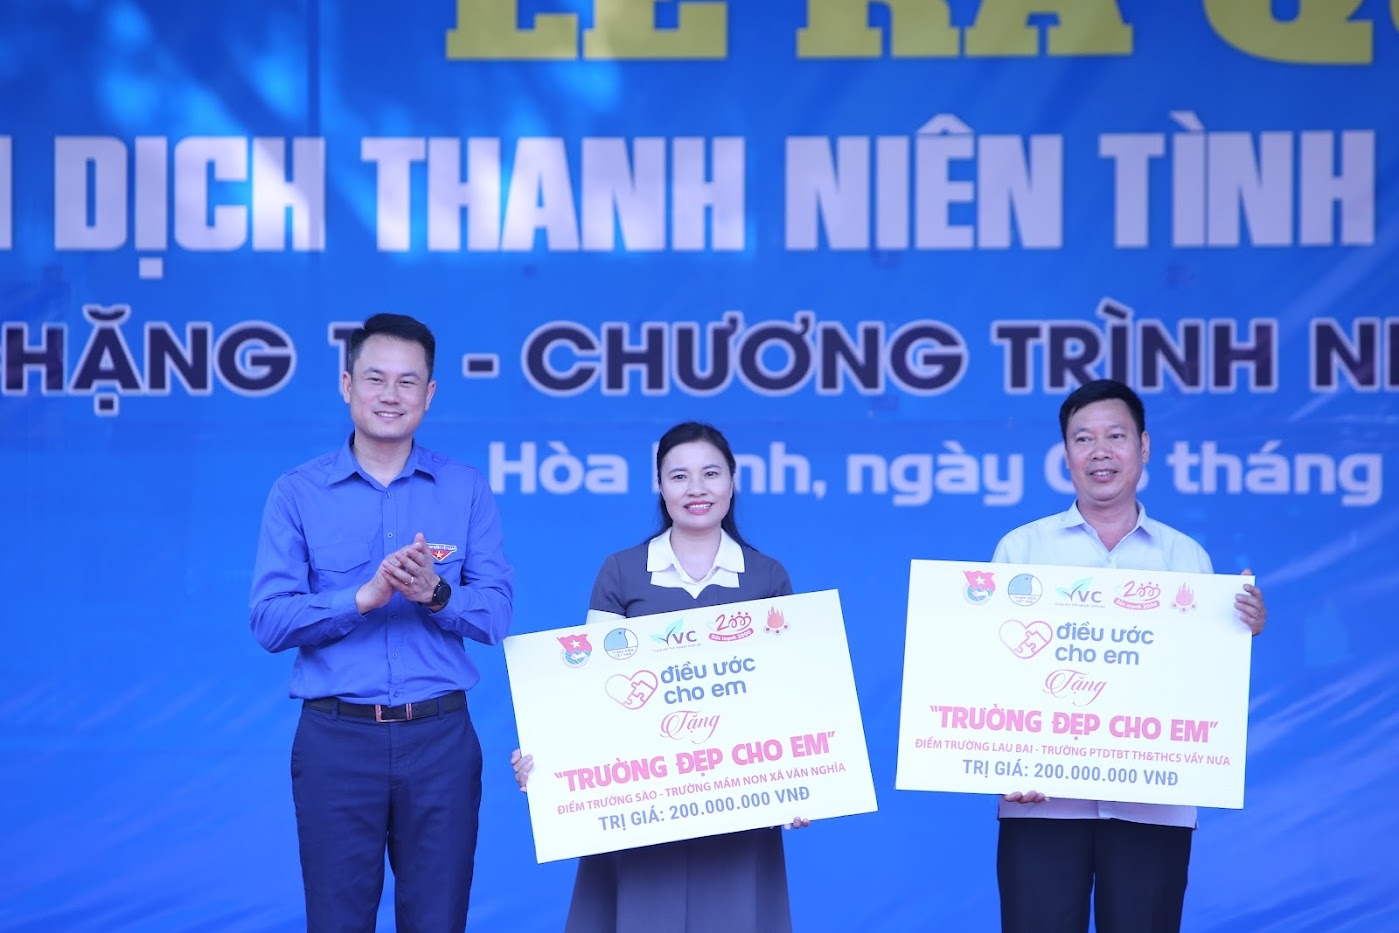 Phó Chủ tịch Thường trực Trung ương Hội Liên hiệp thanh niên Việt Nam Nguyễn Kim Quy trao tặng công trình trường đẹp cho em